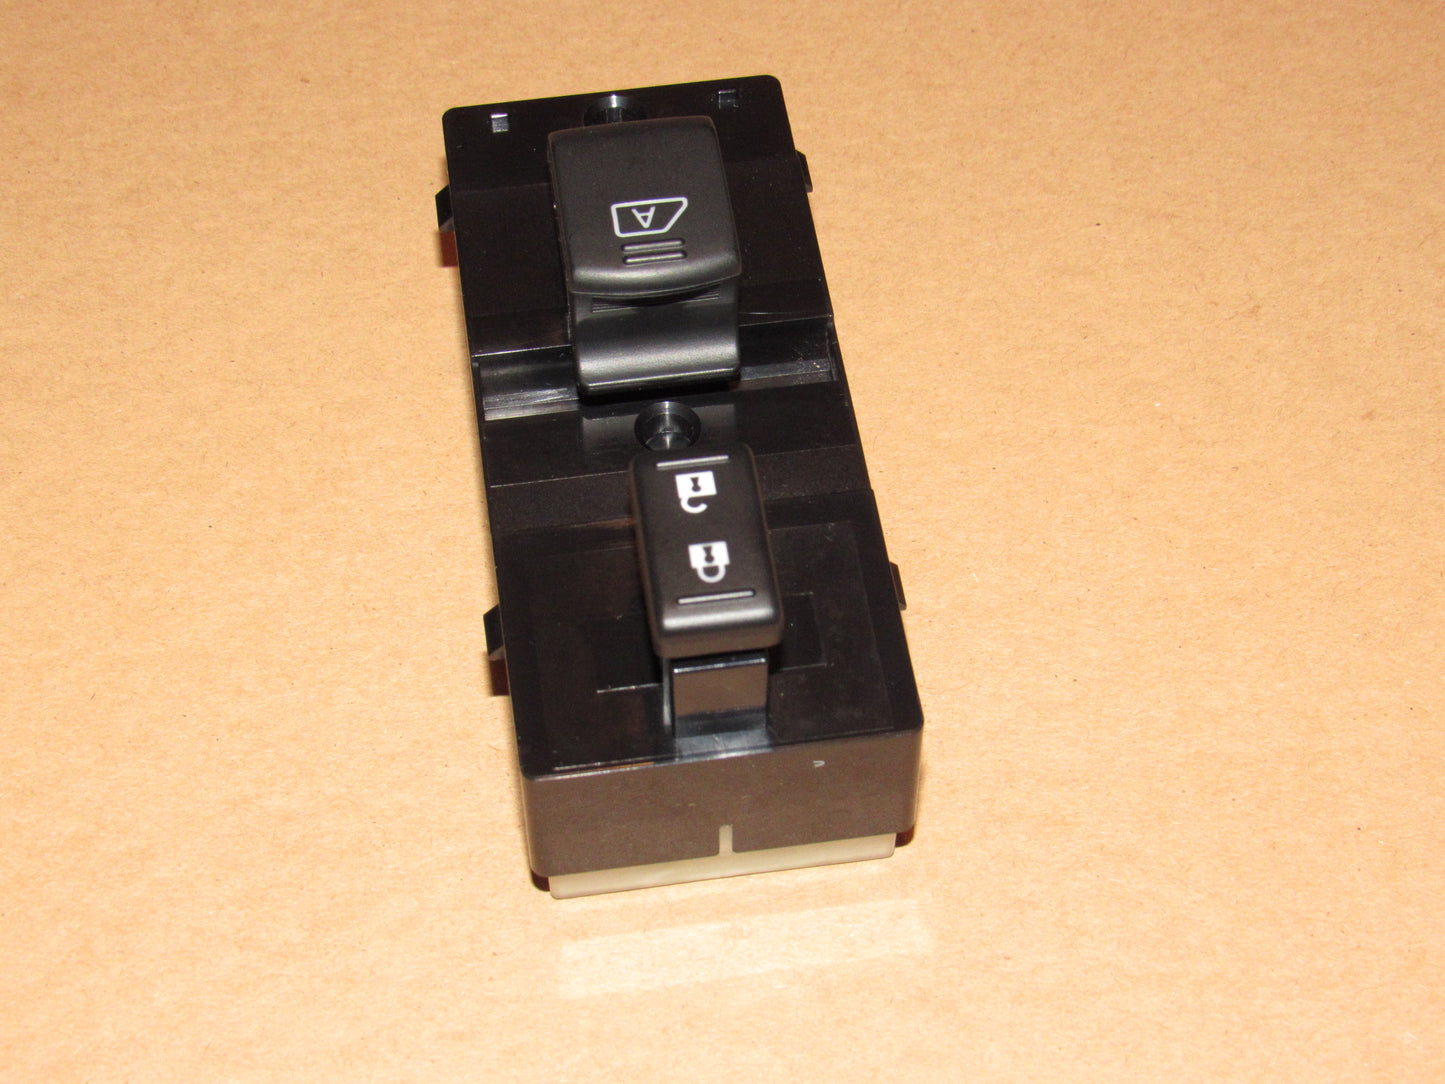 09-21 Nissan 370Z OEM Window Switch - Right